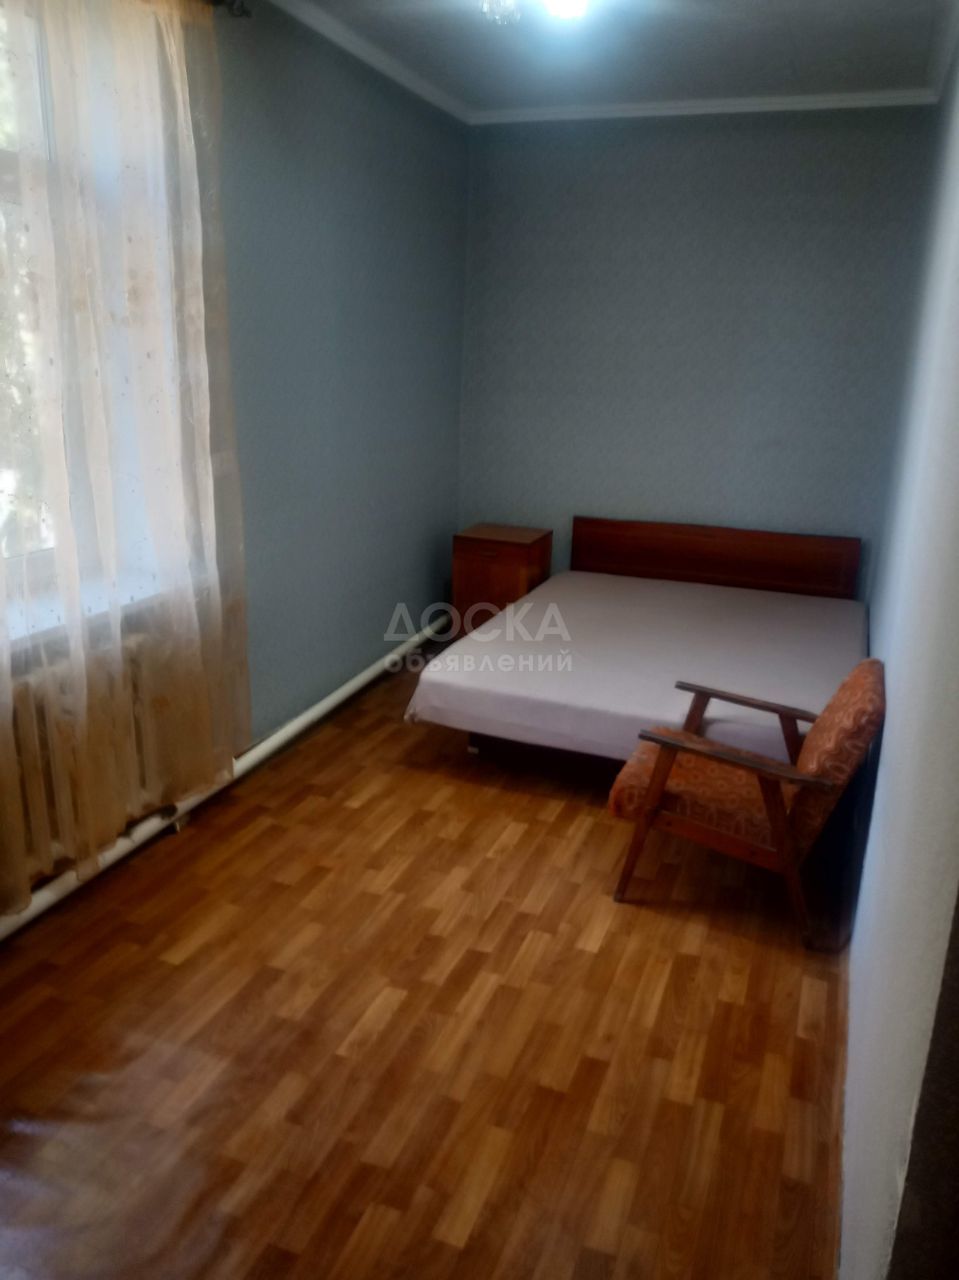 Продаю 2-комнатную квартиру, 44кв. м., этаж - 2/2, Ахунбаева/Абая.